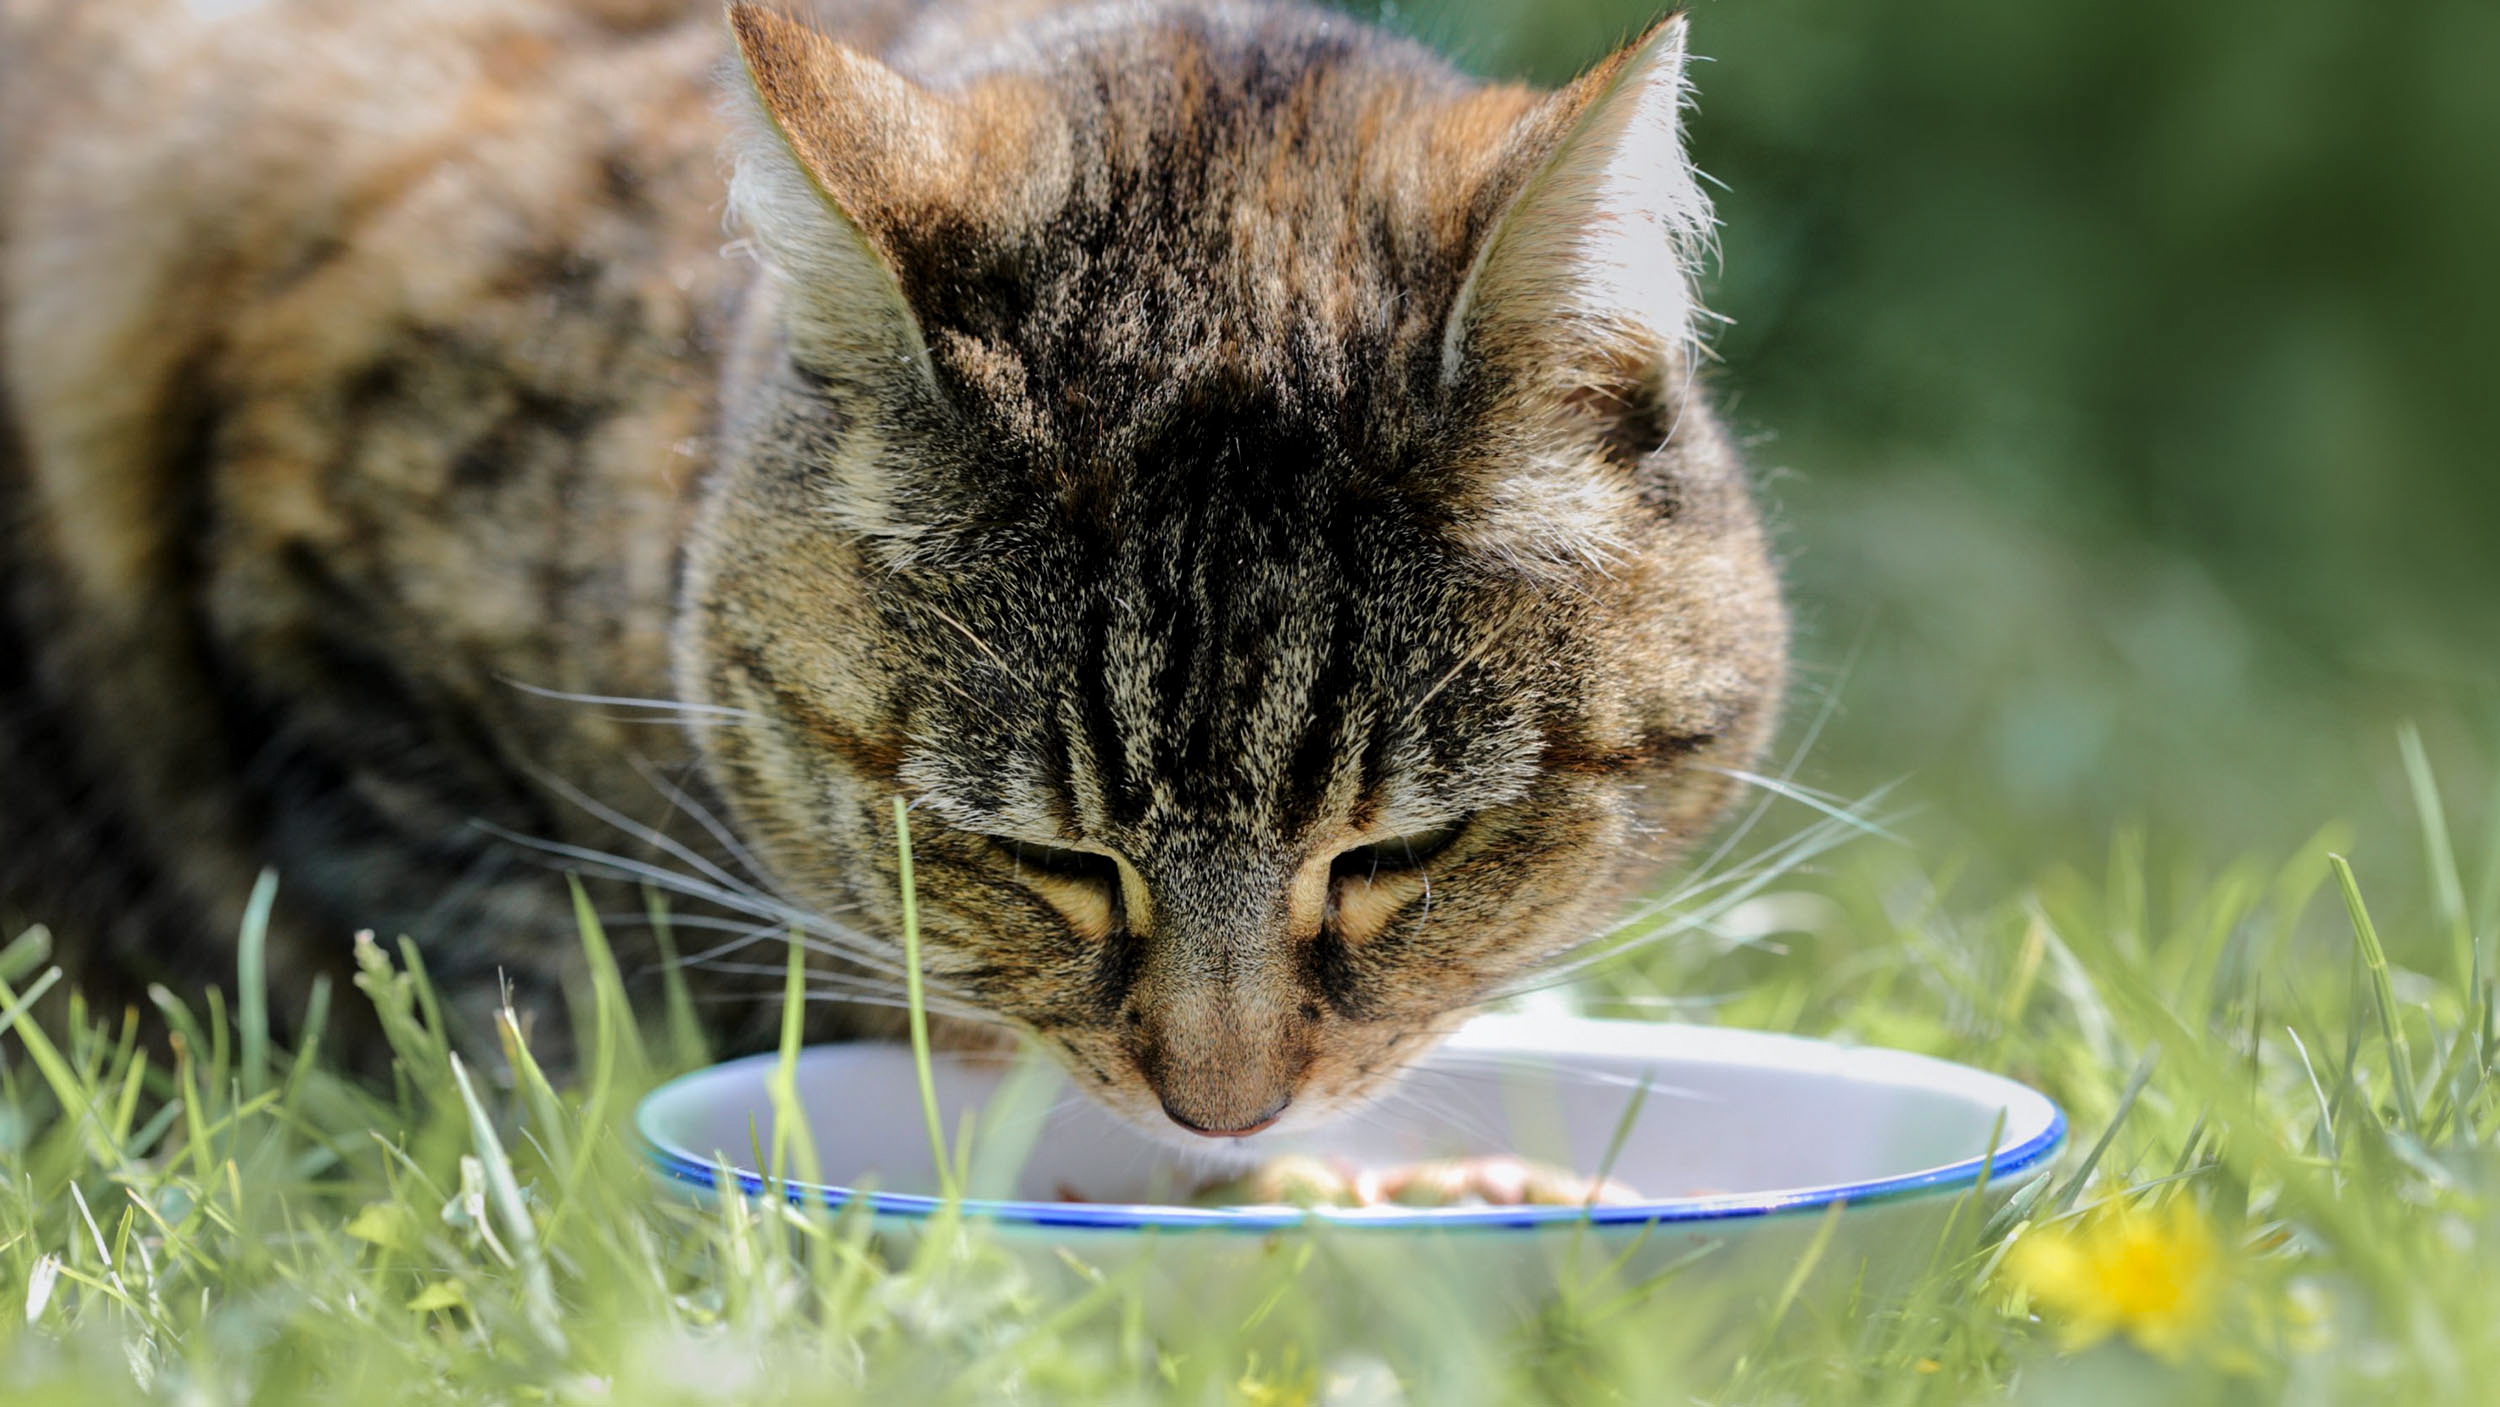 Gatto adulto in piedi sull'erba che mangia da una ciotola bianca.